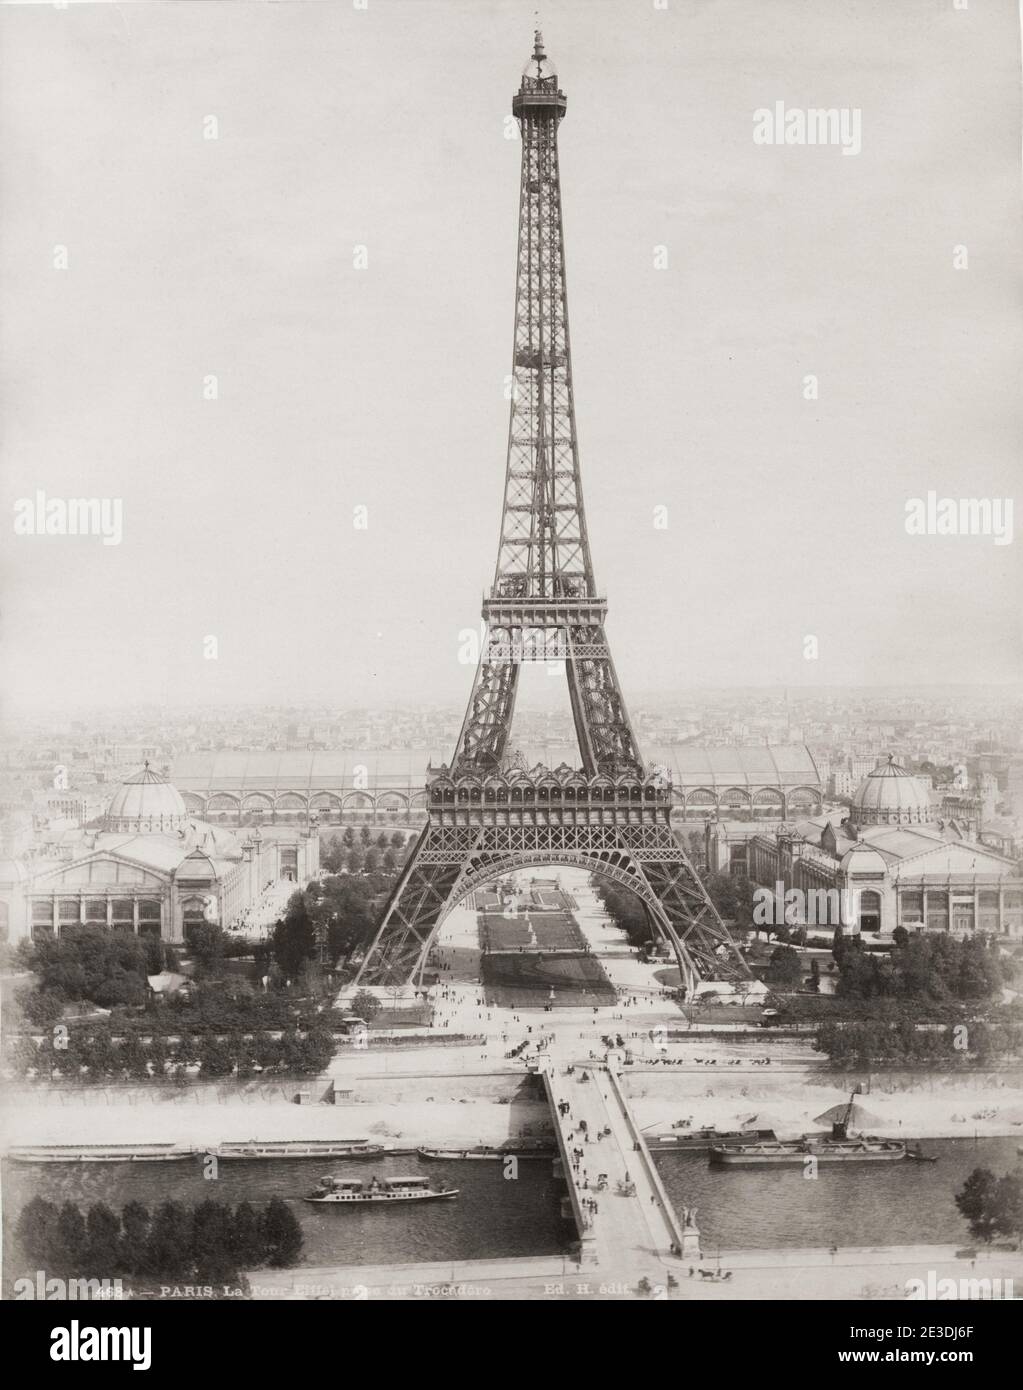 Paris: Capital of the 19th Century